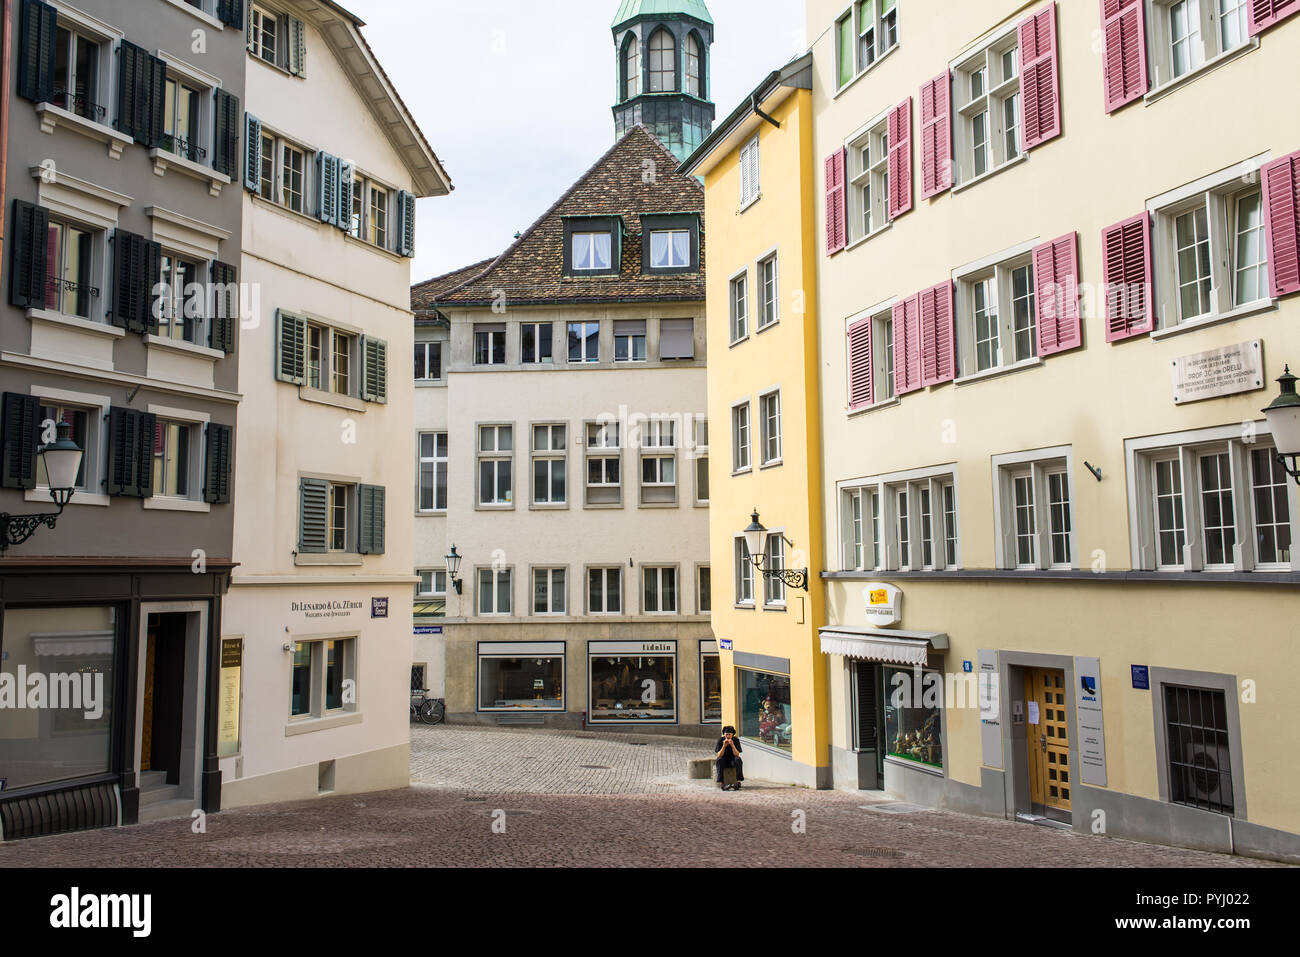 Zurich, Switzerland - March 2017: Glocken-Gasse a medieval alley street in Zurich city centre, Switzerland Stock Photo